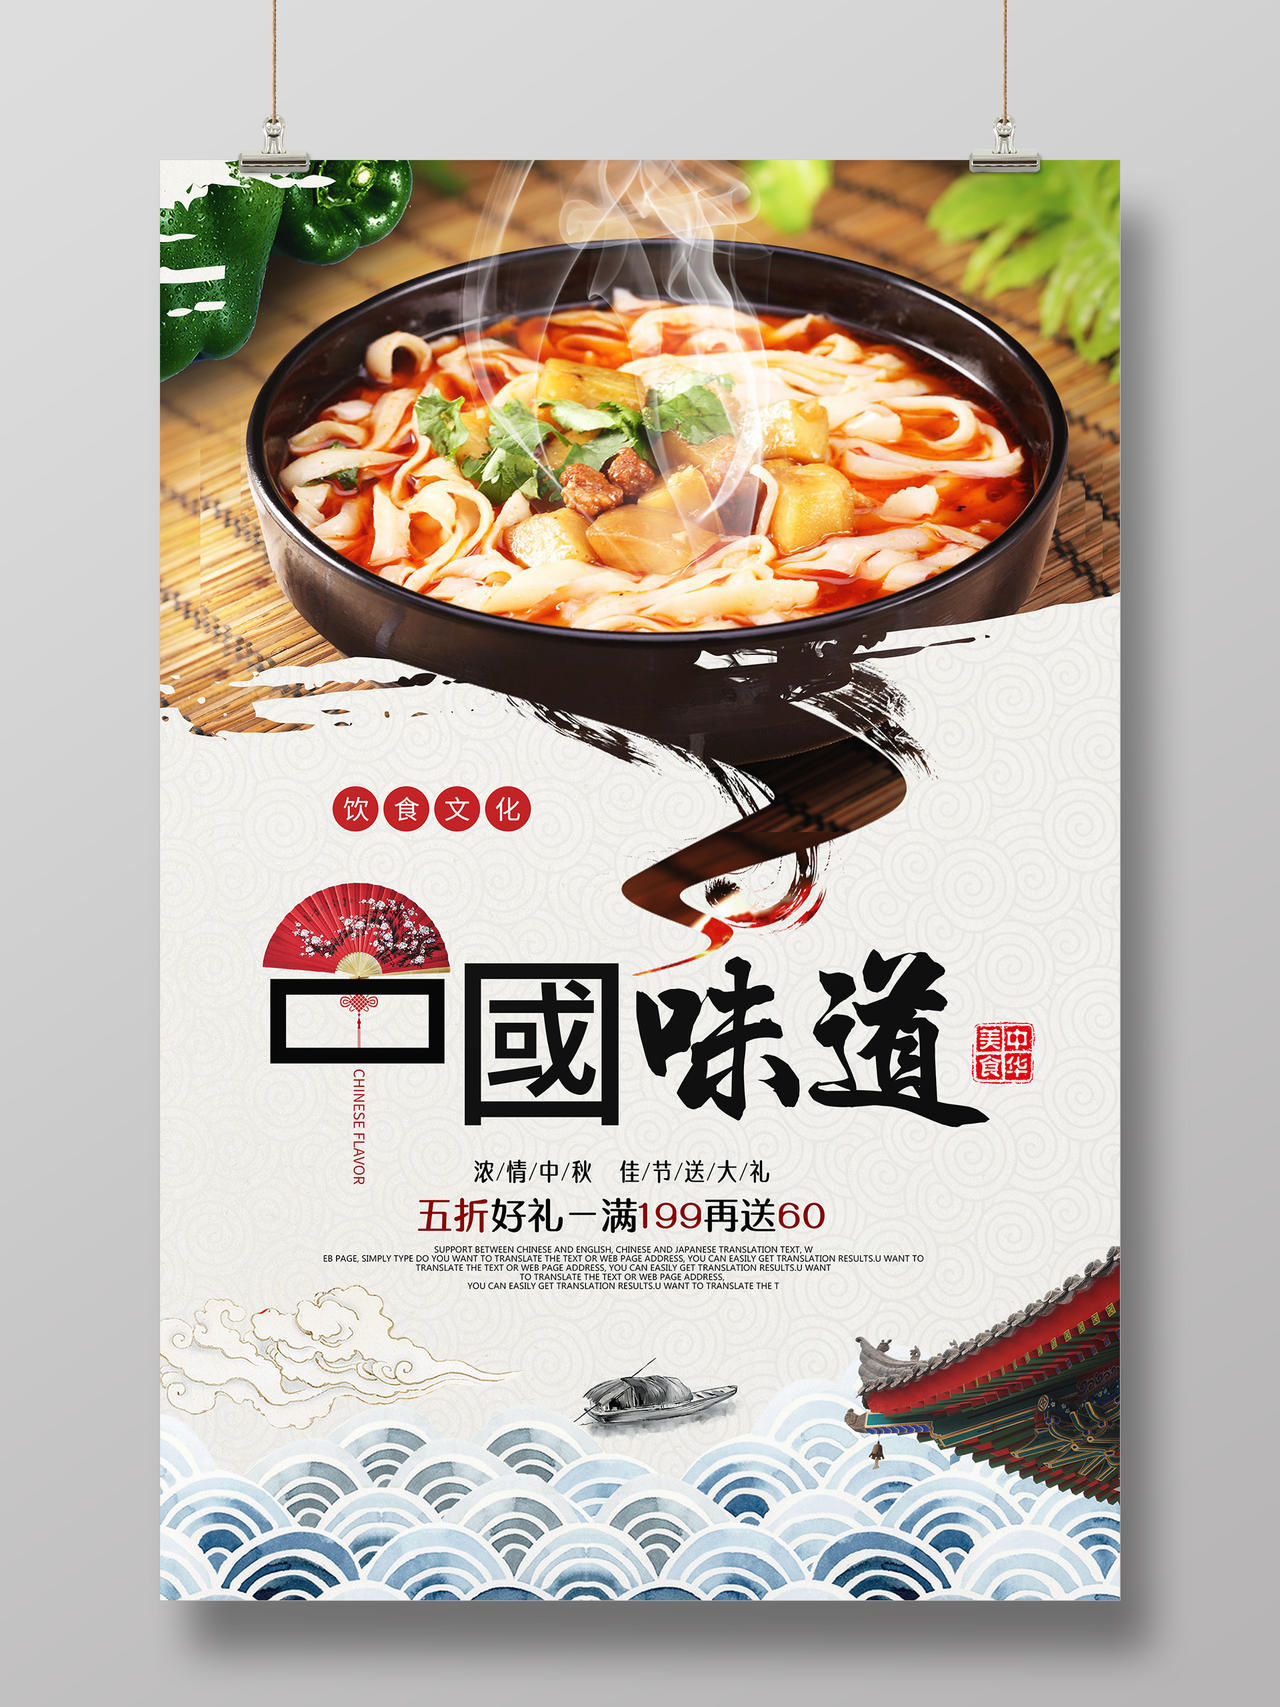 简约大气中国味道刀削面早餐美食宣传海报